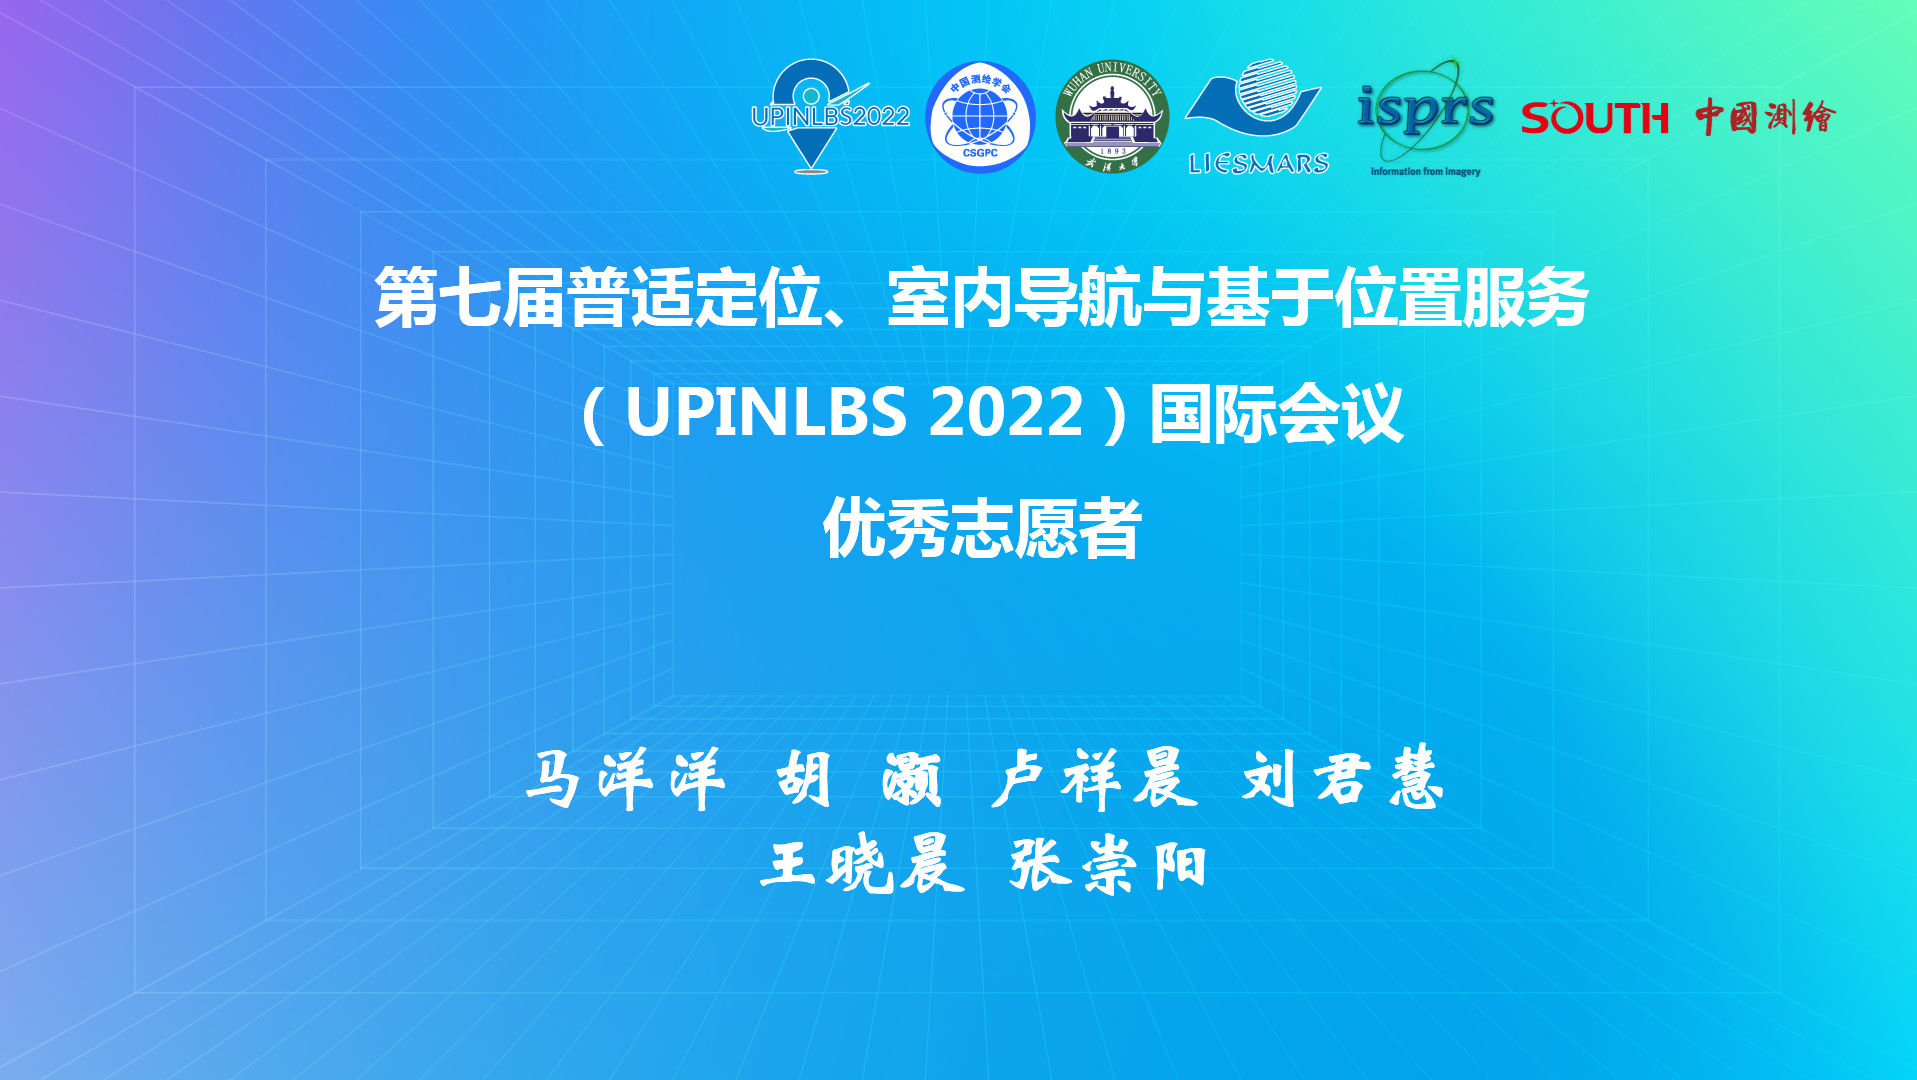 第七届普适定位、室内导航与基于位置服务（UPINLBS 2022)国际会议优秀志愿者